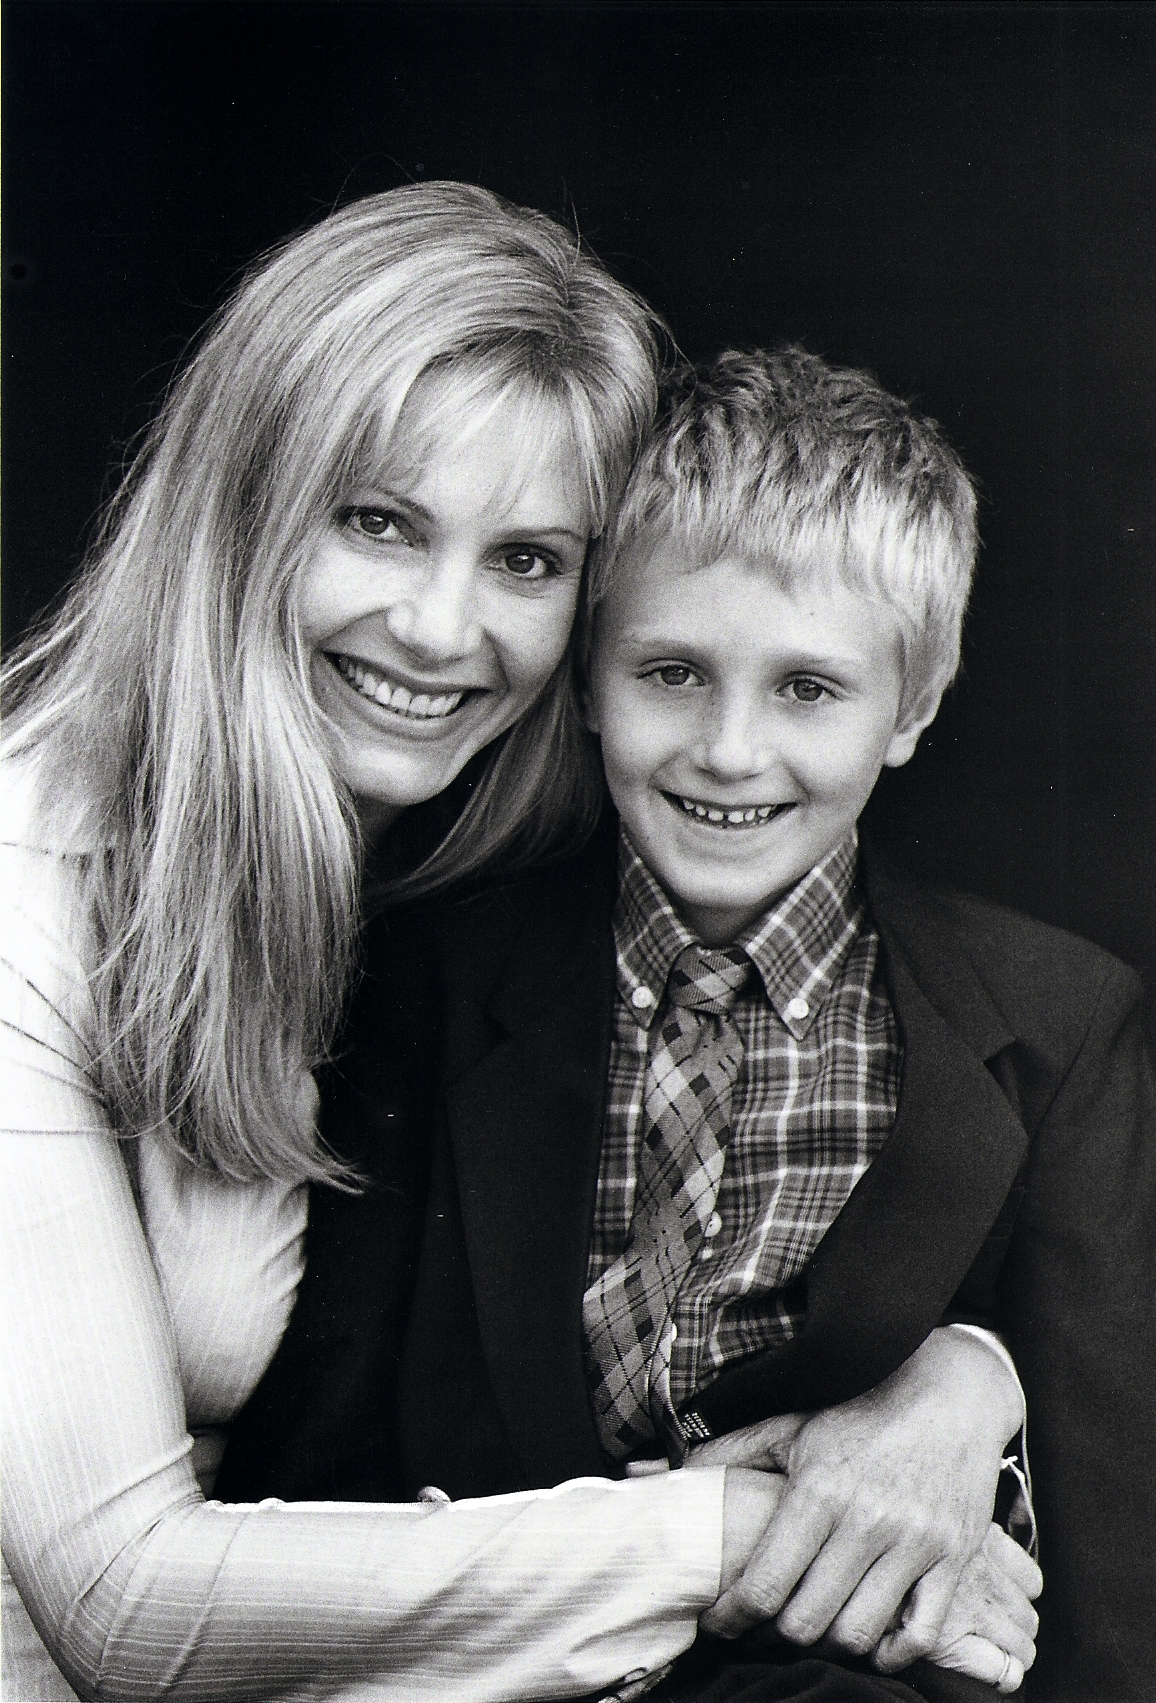 Gretchen Becker and son Dylan Becker.